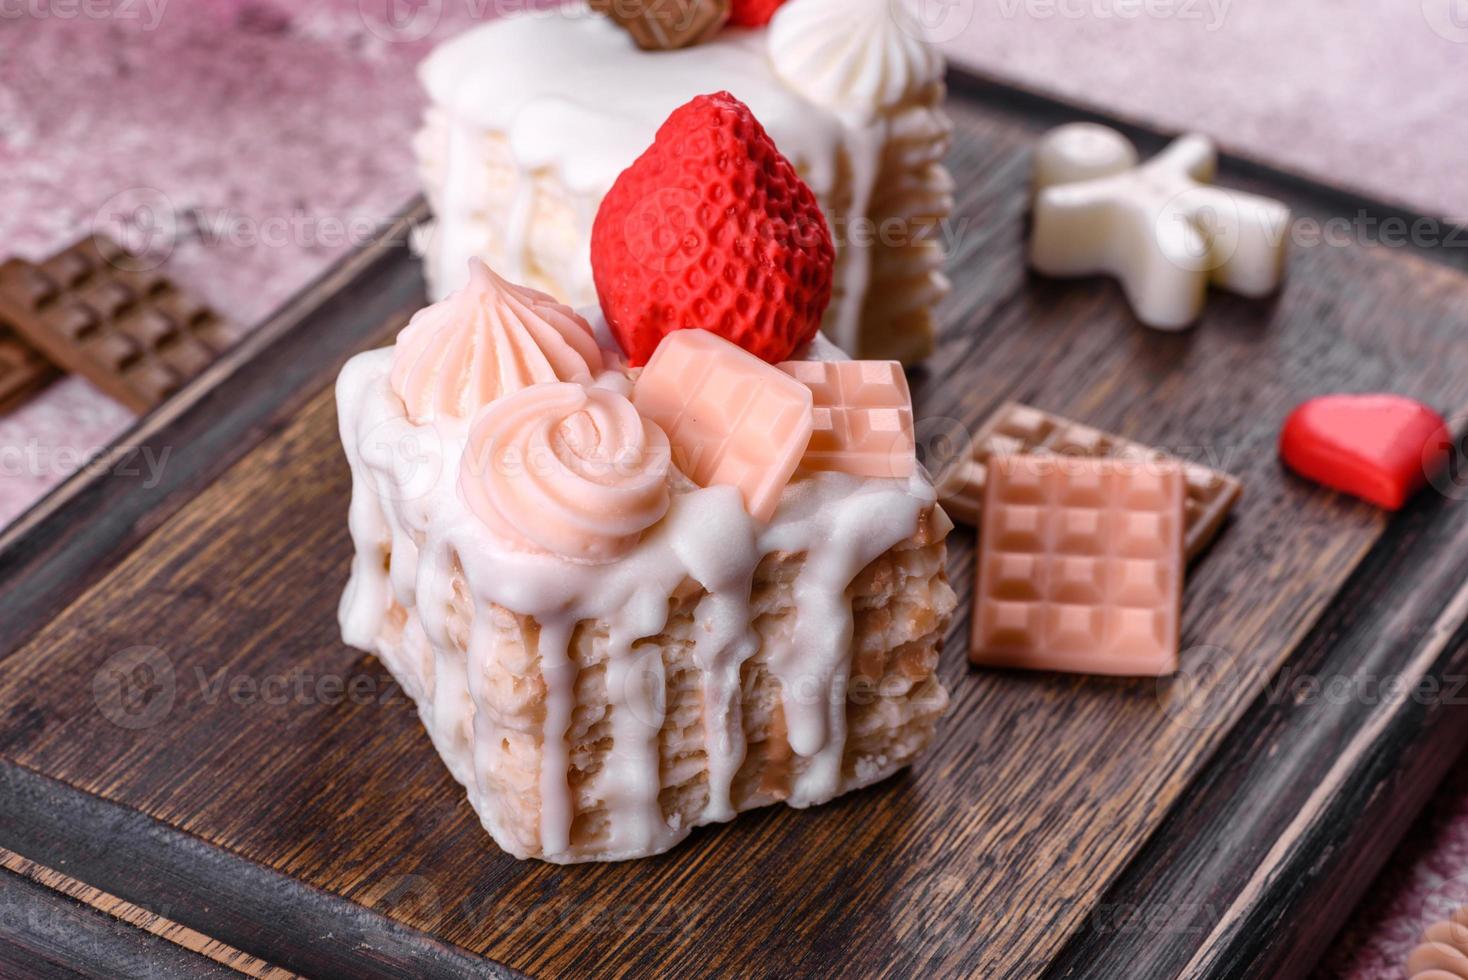 lindo sabonete colorido brilhante feito na forma de um bolo apetitoso foto